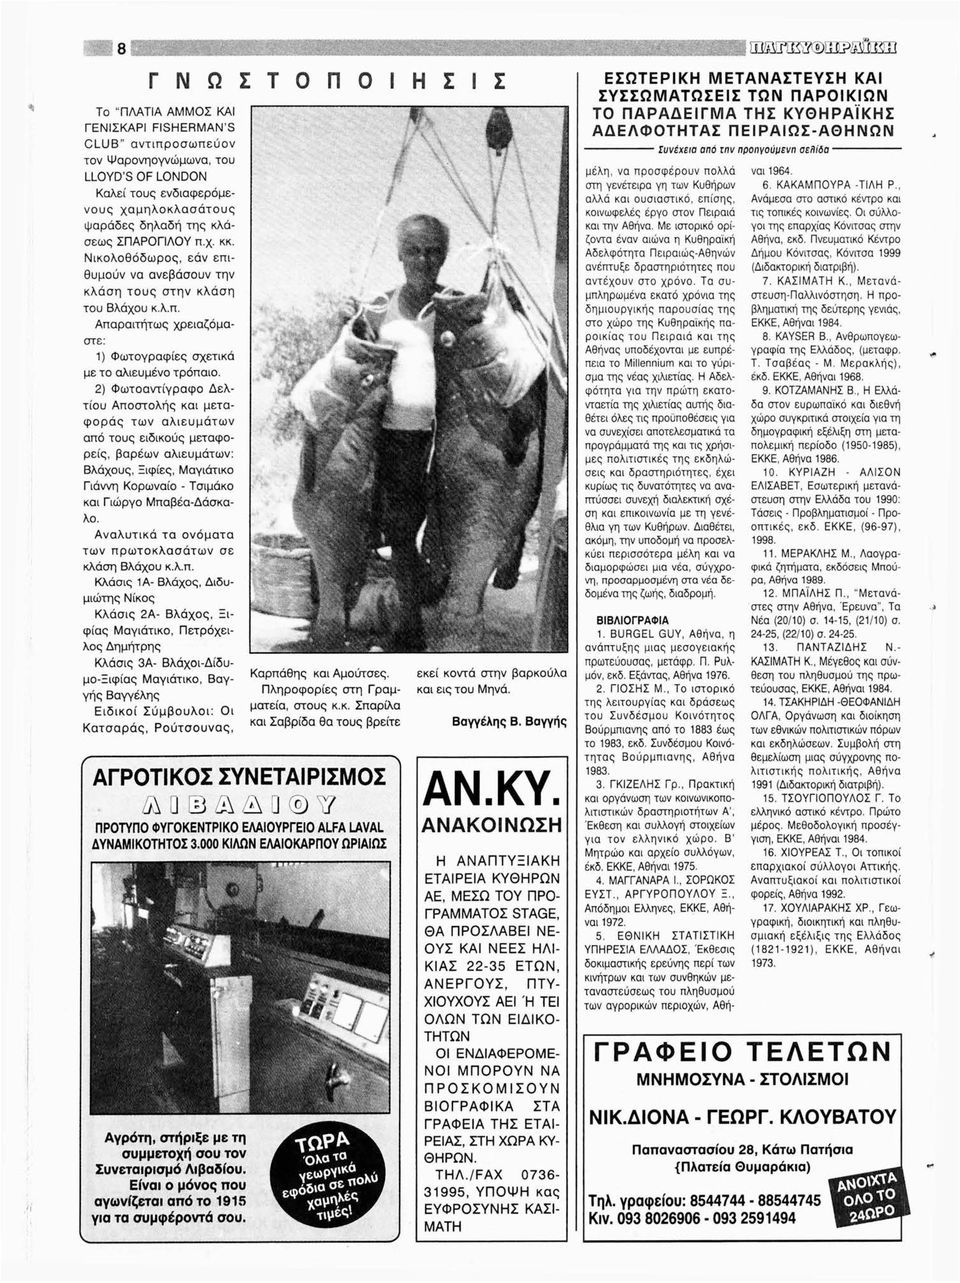 2) Φωτοαντίγραφο Δελτίου Αποστολής και μεταφοράς των αλιευμάτων από τους ειδικούς μεταφορείς, βαρέων αλιευμάτων: Βλάχους, Ξιφίες, Μαγιάτικο Γιάννη Κορωναίο - Τσιμάκο και Γιώργο Μπαβέα-Δάσκαλο.